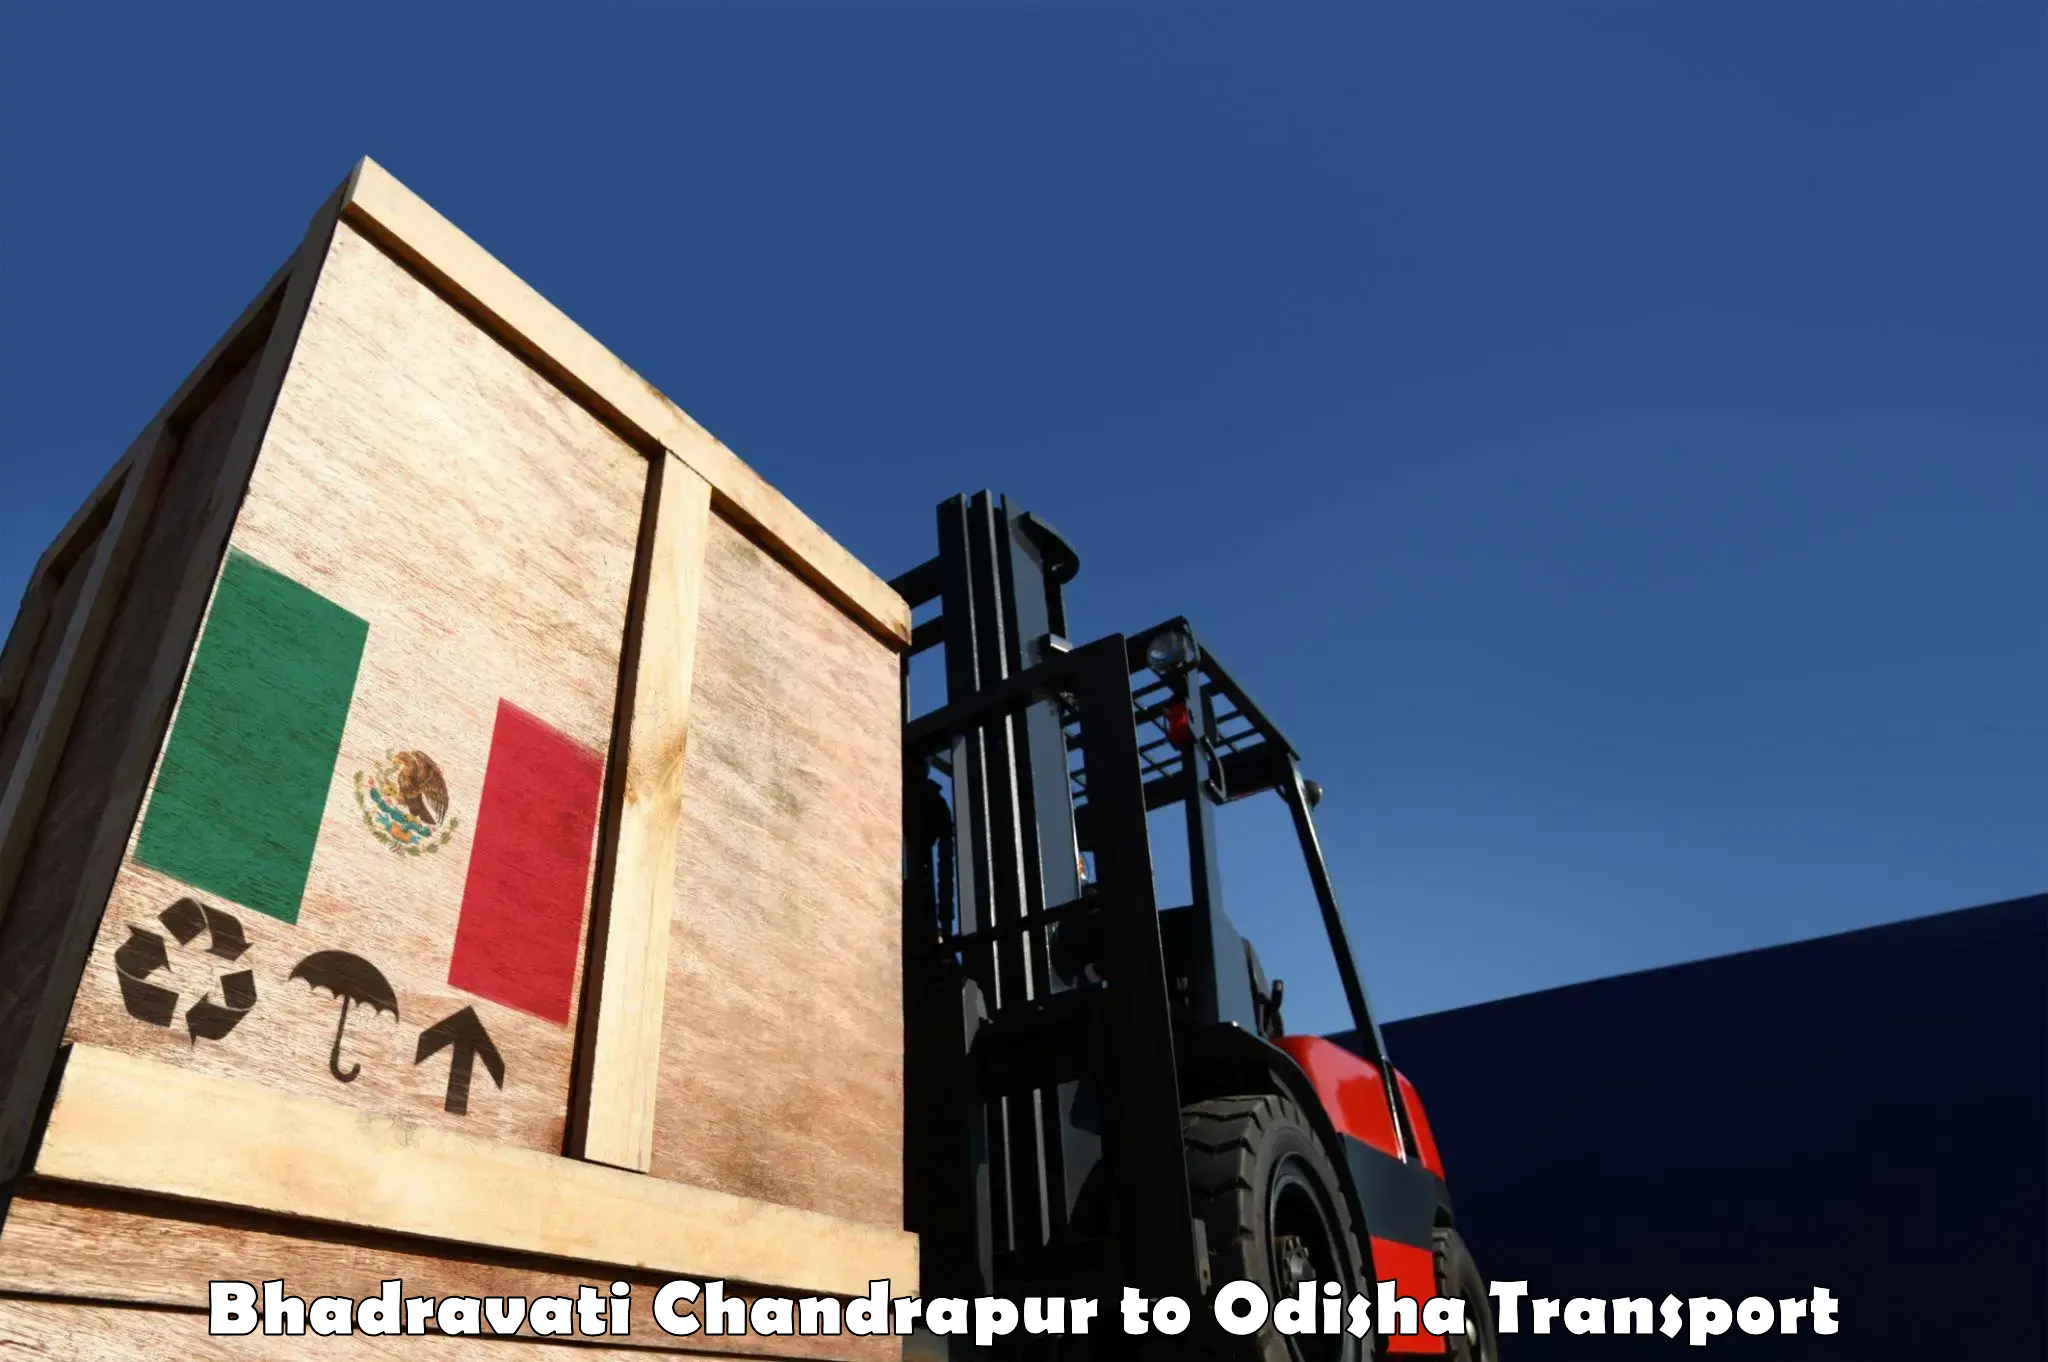 Truck transport companies in India Bhadravati Chandrapur to Dandisahi